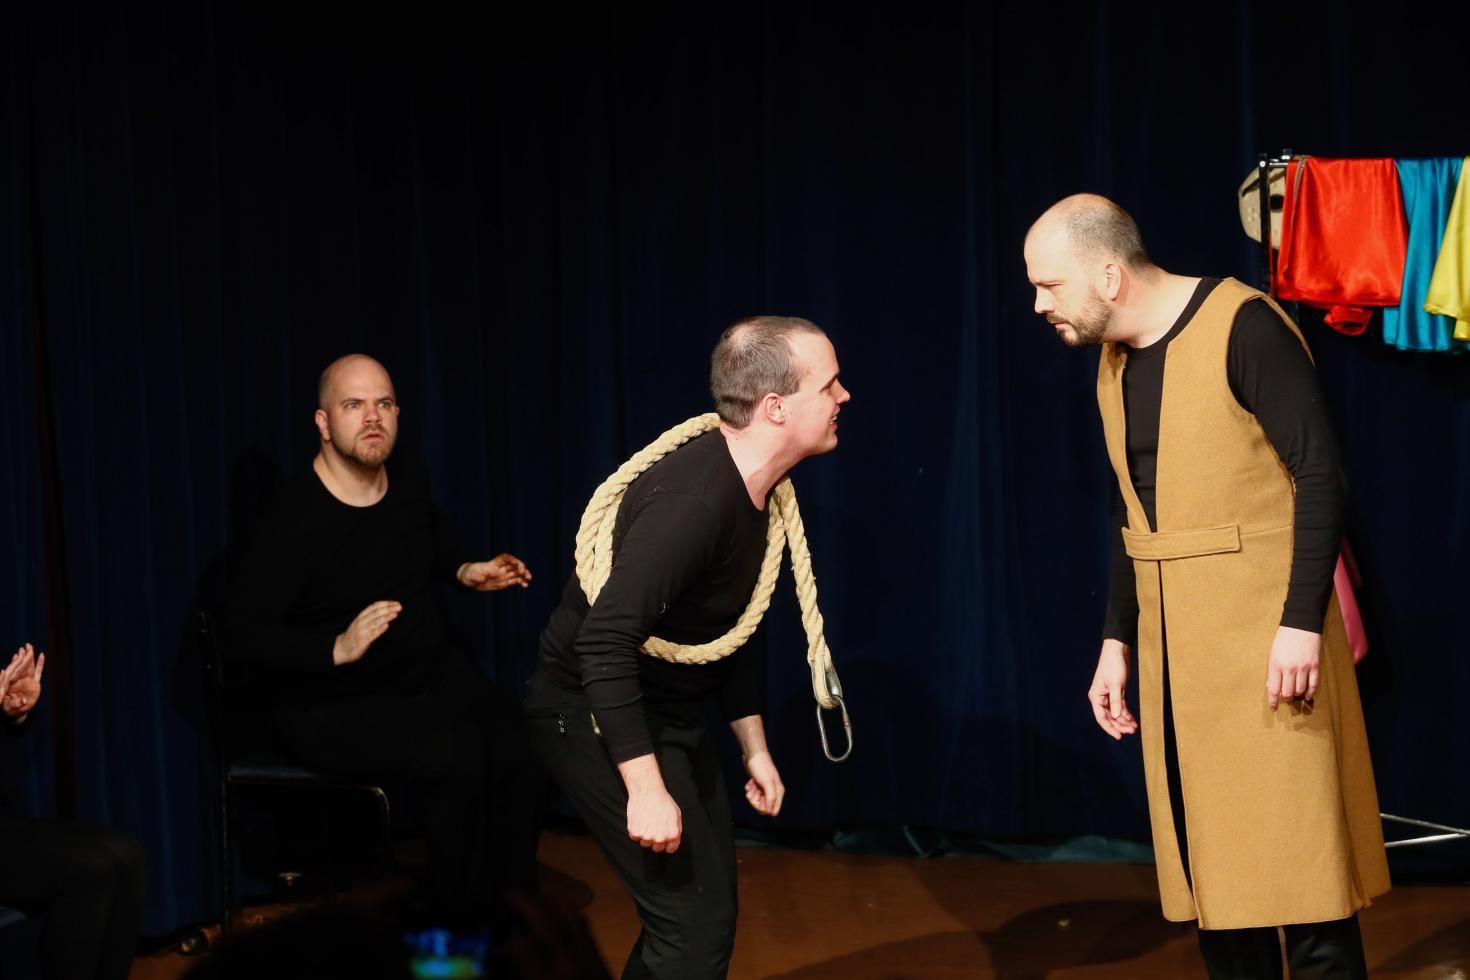 Újra láthatja a közönség A vihar című színdarabot a Prospero Színkör előadásában